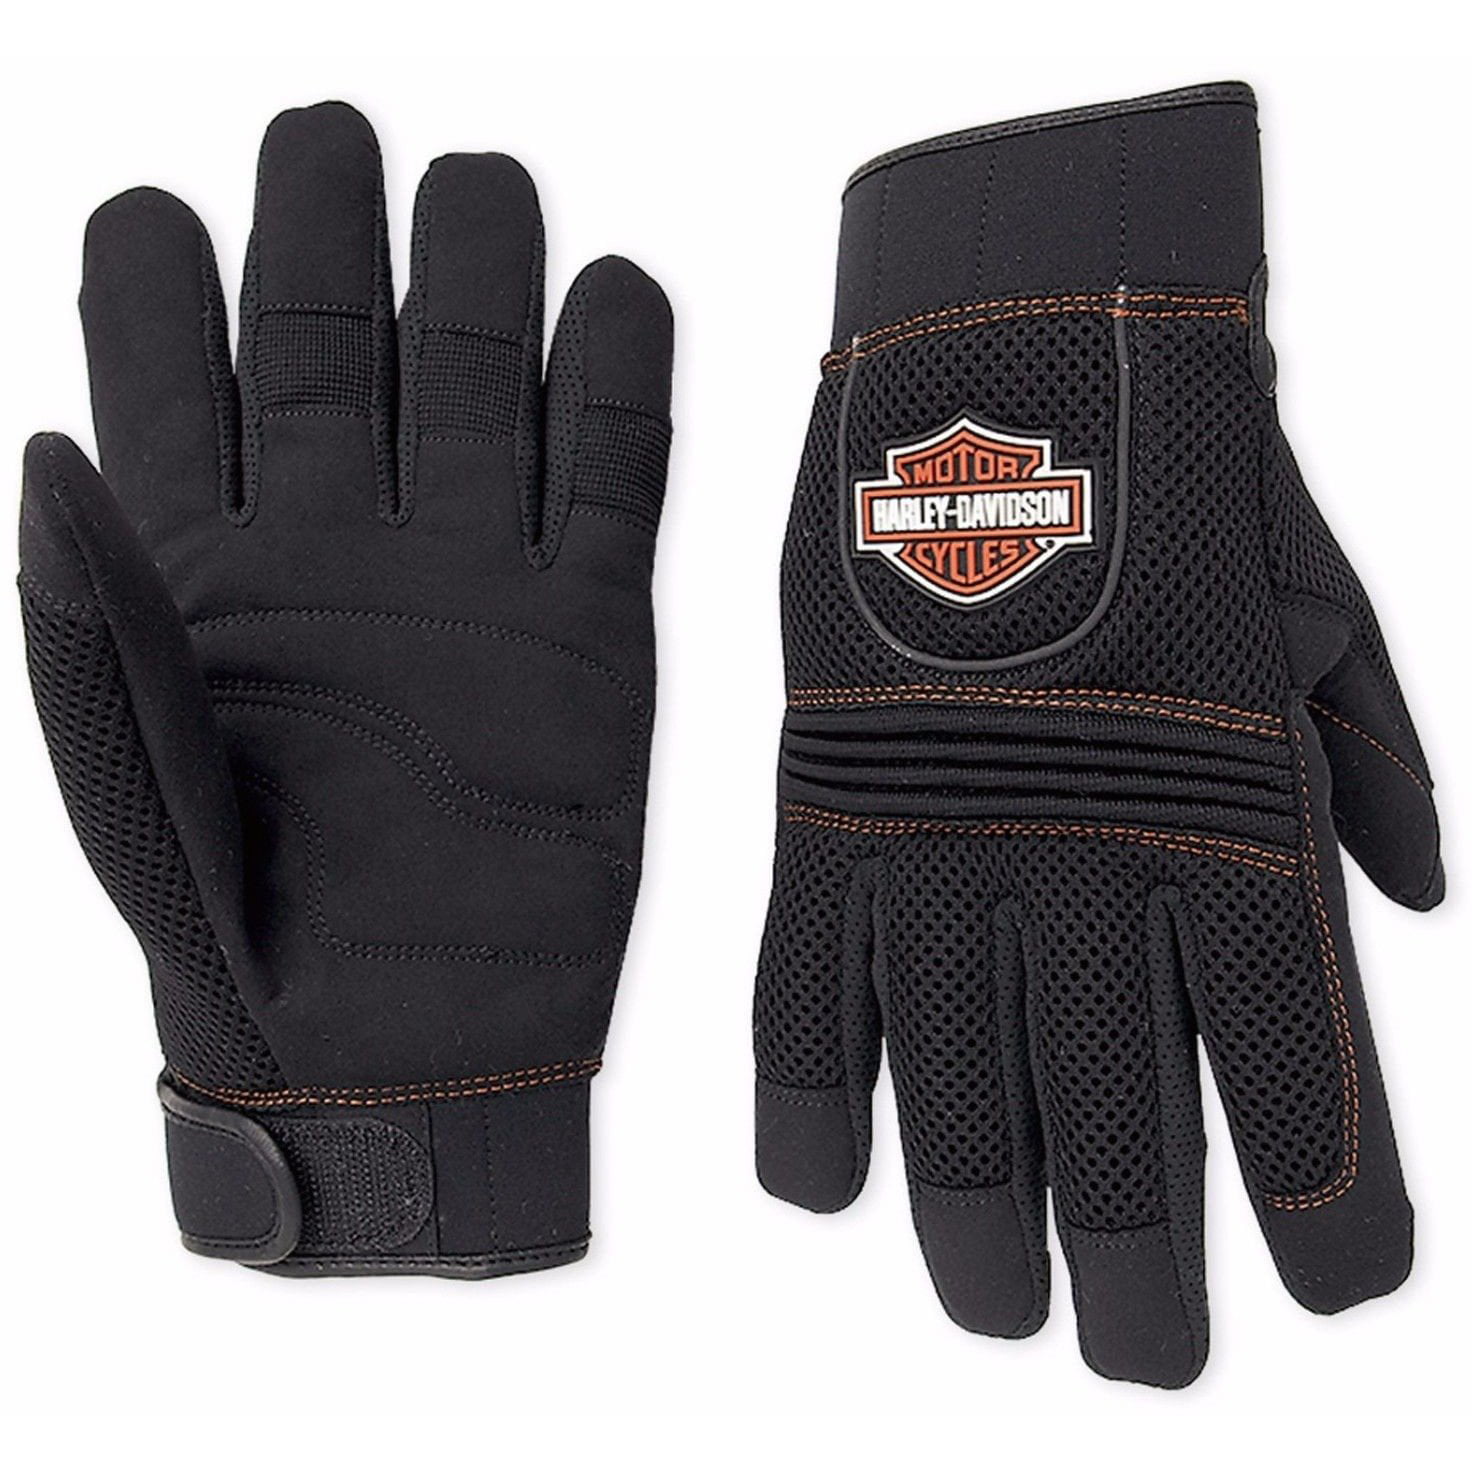 Harley Davidson Men S Mesh Full Finger Riding Gloves 98263 07vm Walmart Com